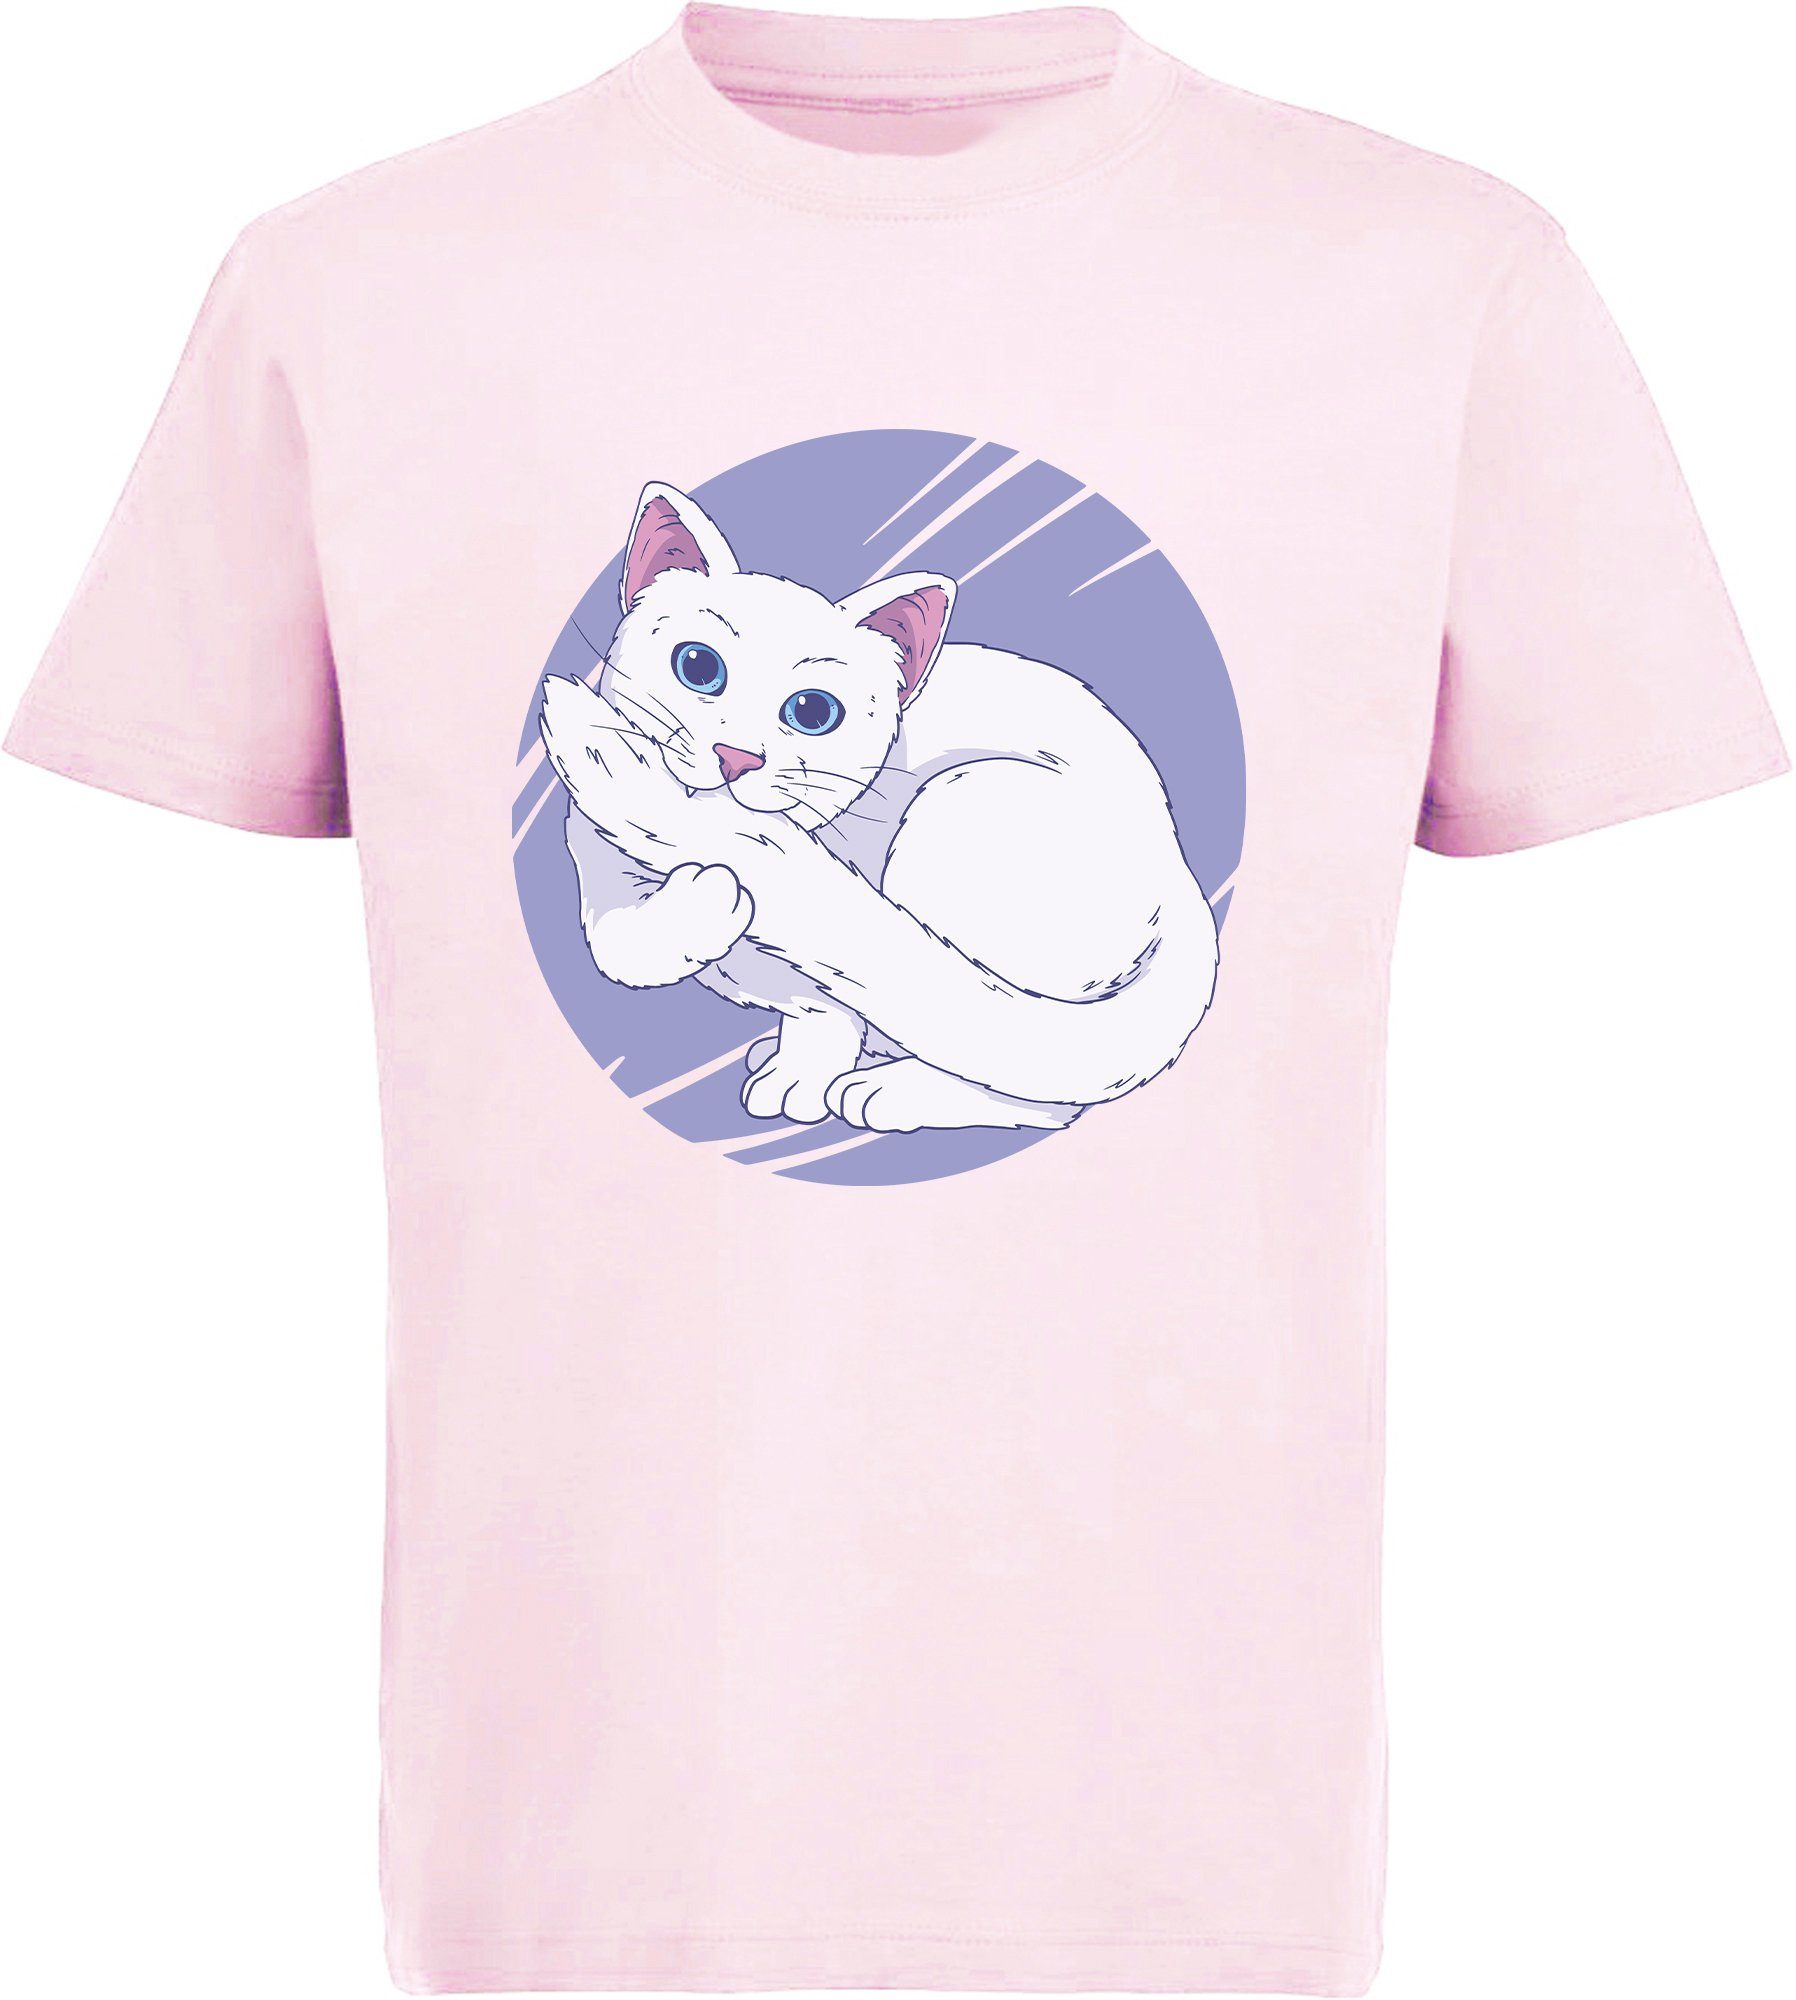 MyDesign24 Print-Shirt bedrucktes Mädchen T-Shirt weiße Katze die in Ihren Schwanz beißt Baumwollshirt mit Aufdruck, weiß, schwarz, rot, rosa, i127